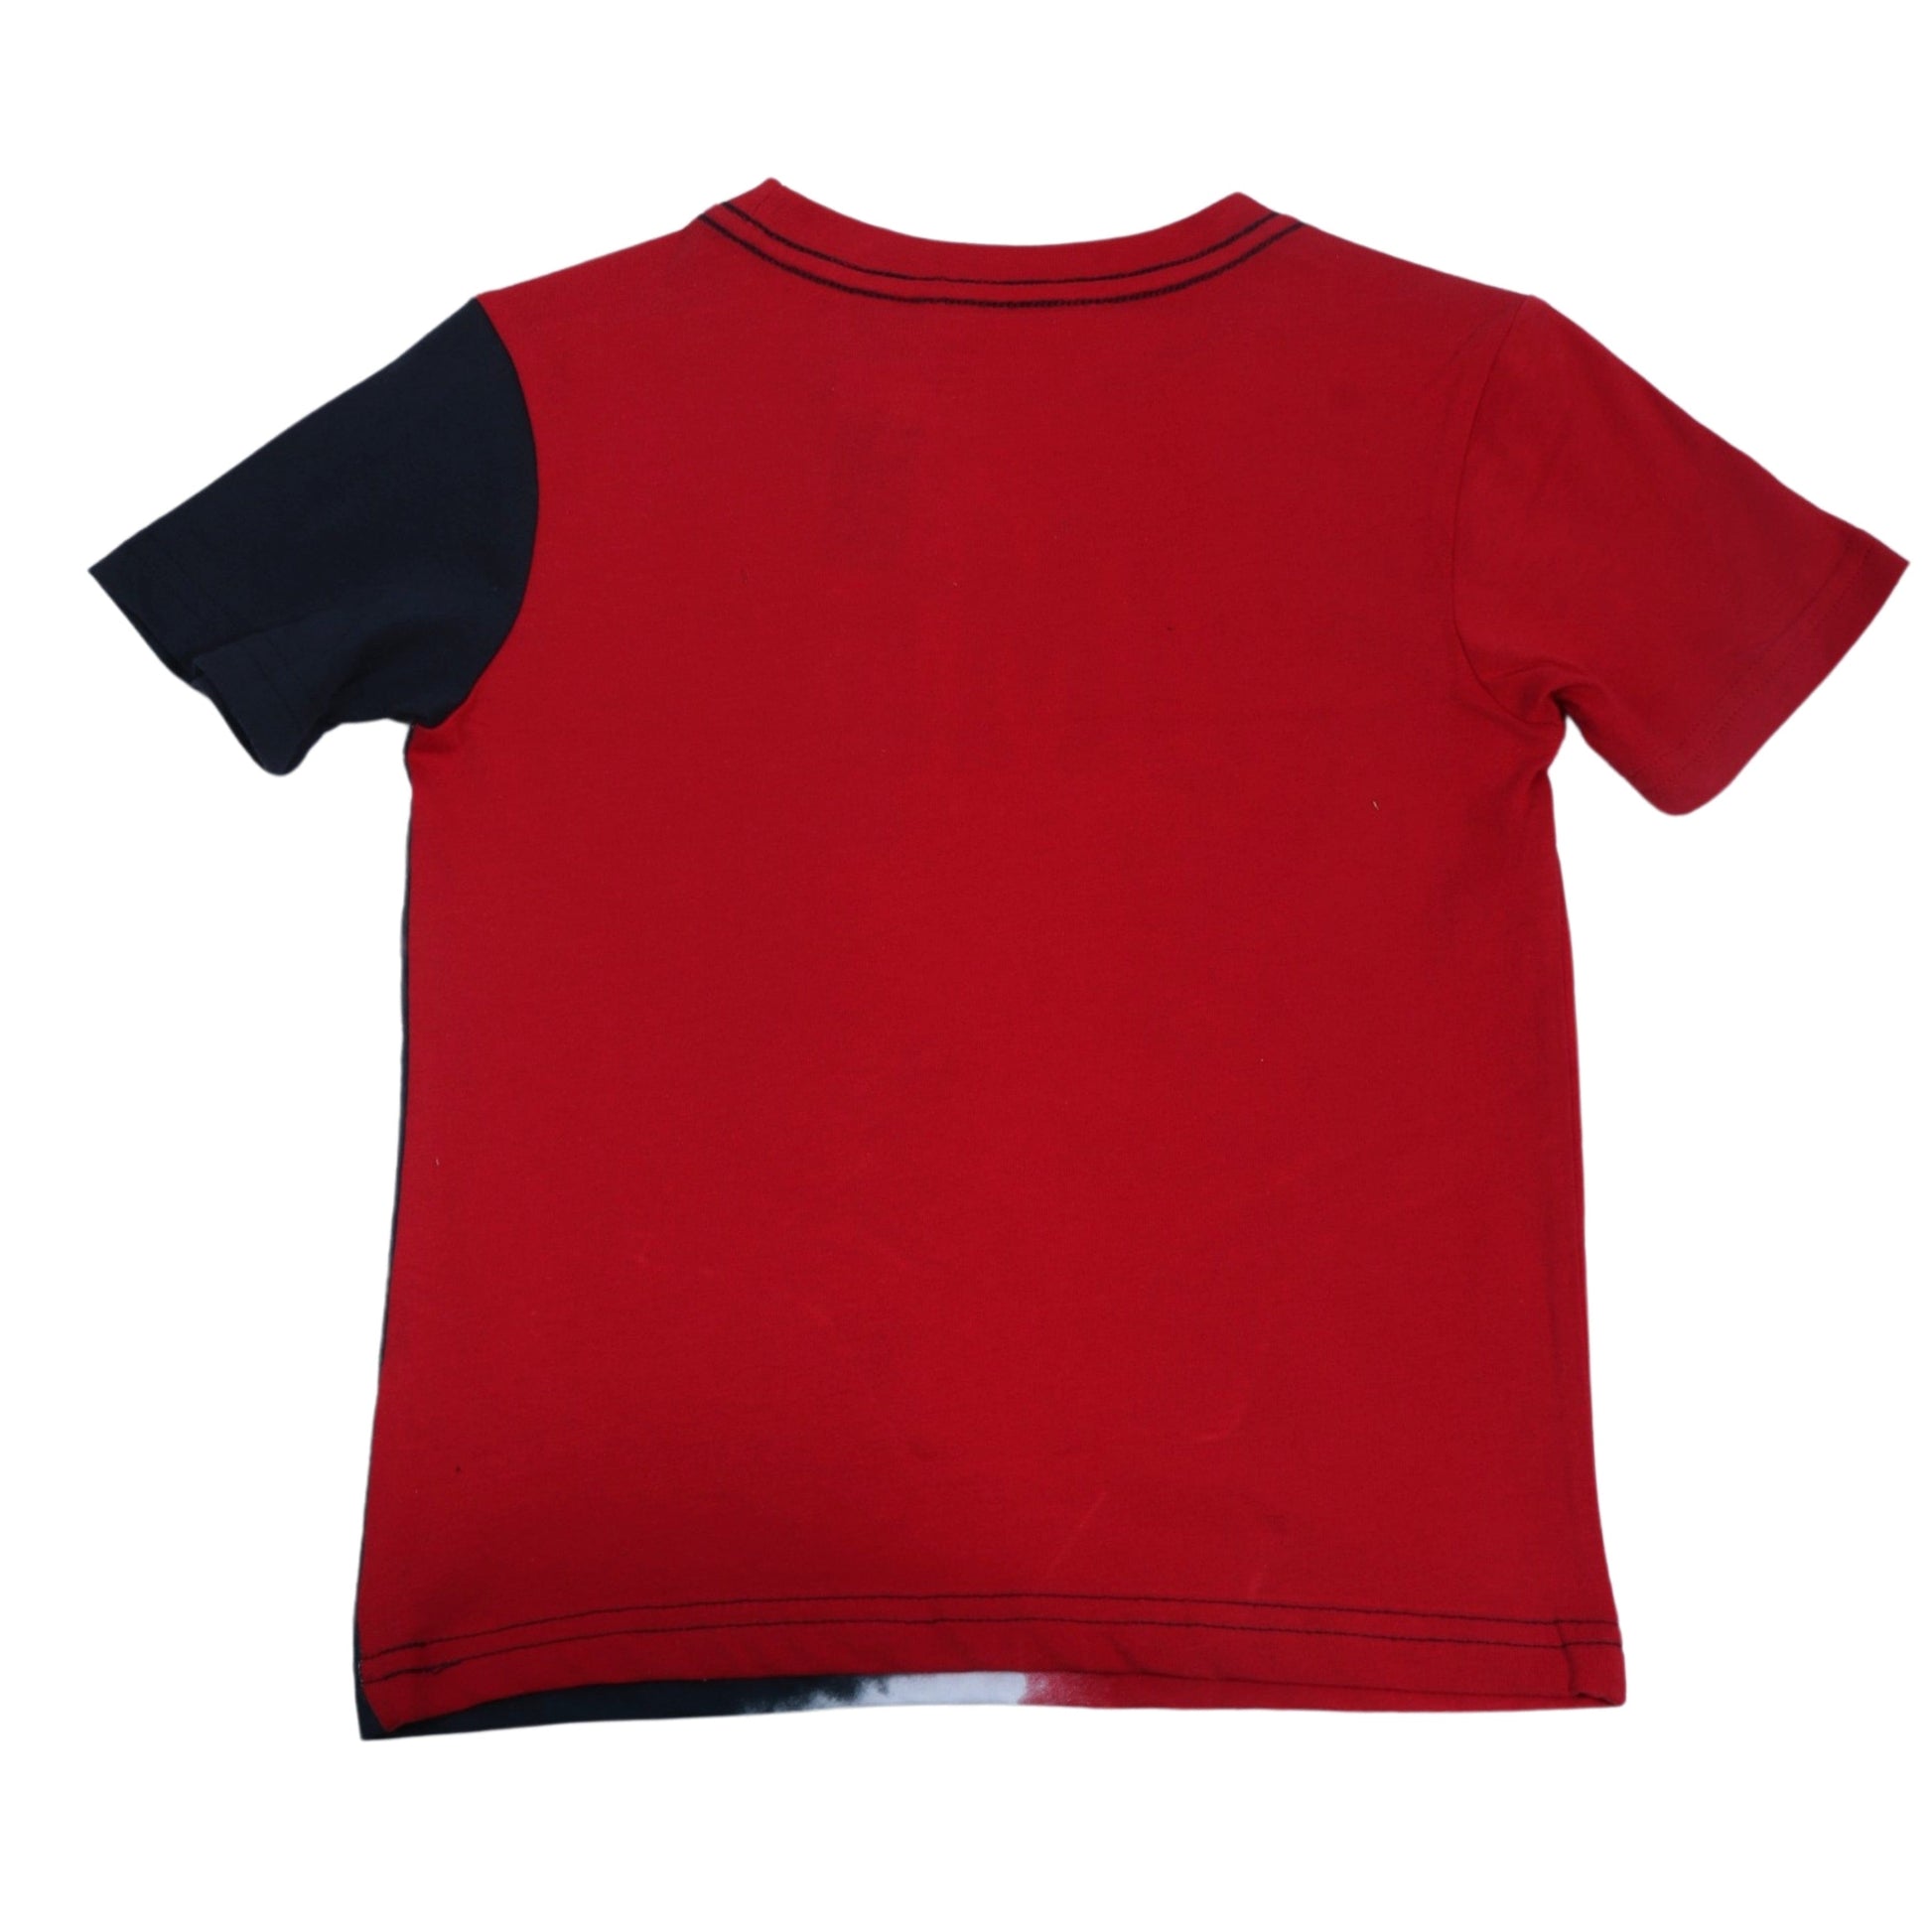 ORIGINAL Boys Tops 4 Years / Multi-Color ORIGINAL - KIDS - Graphic T-Shirt